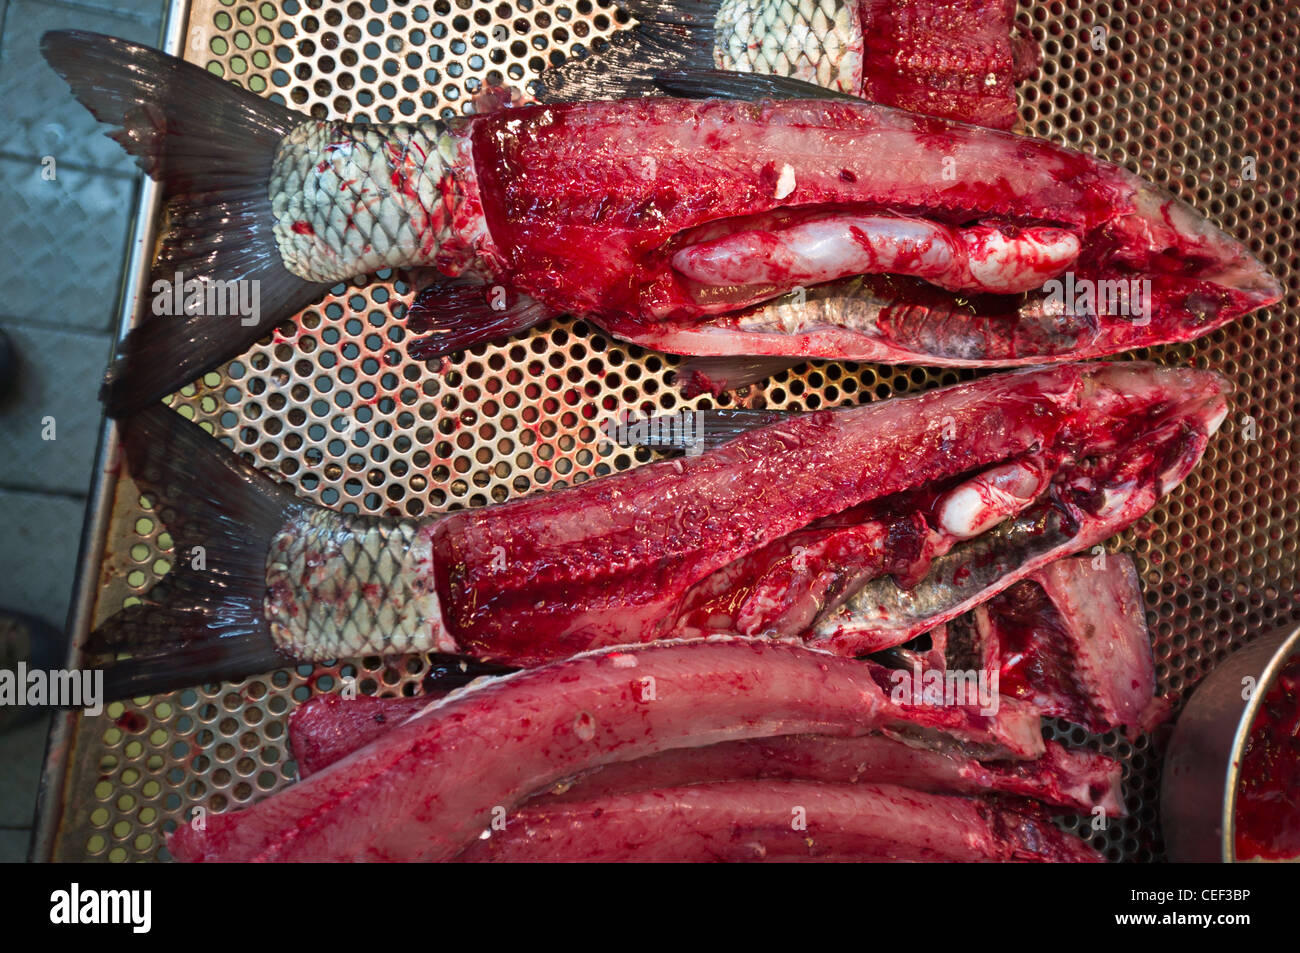 dh CAUSEWAY BAY HONGKONG frischer, nasser Fisch auf Chinesisch Marktstand zu zeigen Frische RAW Tablett china Stand Lebensmittel Stände schließen Märkte Stockfoto